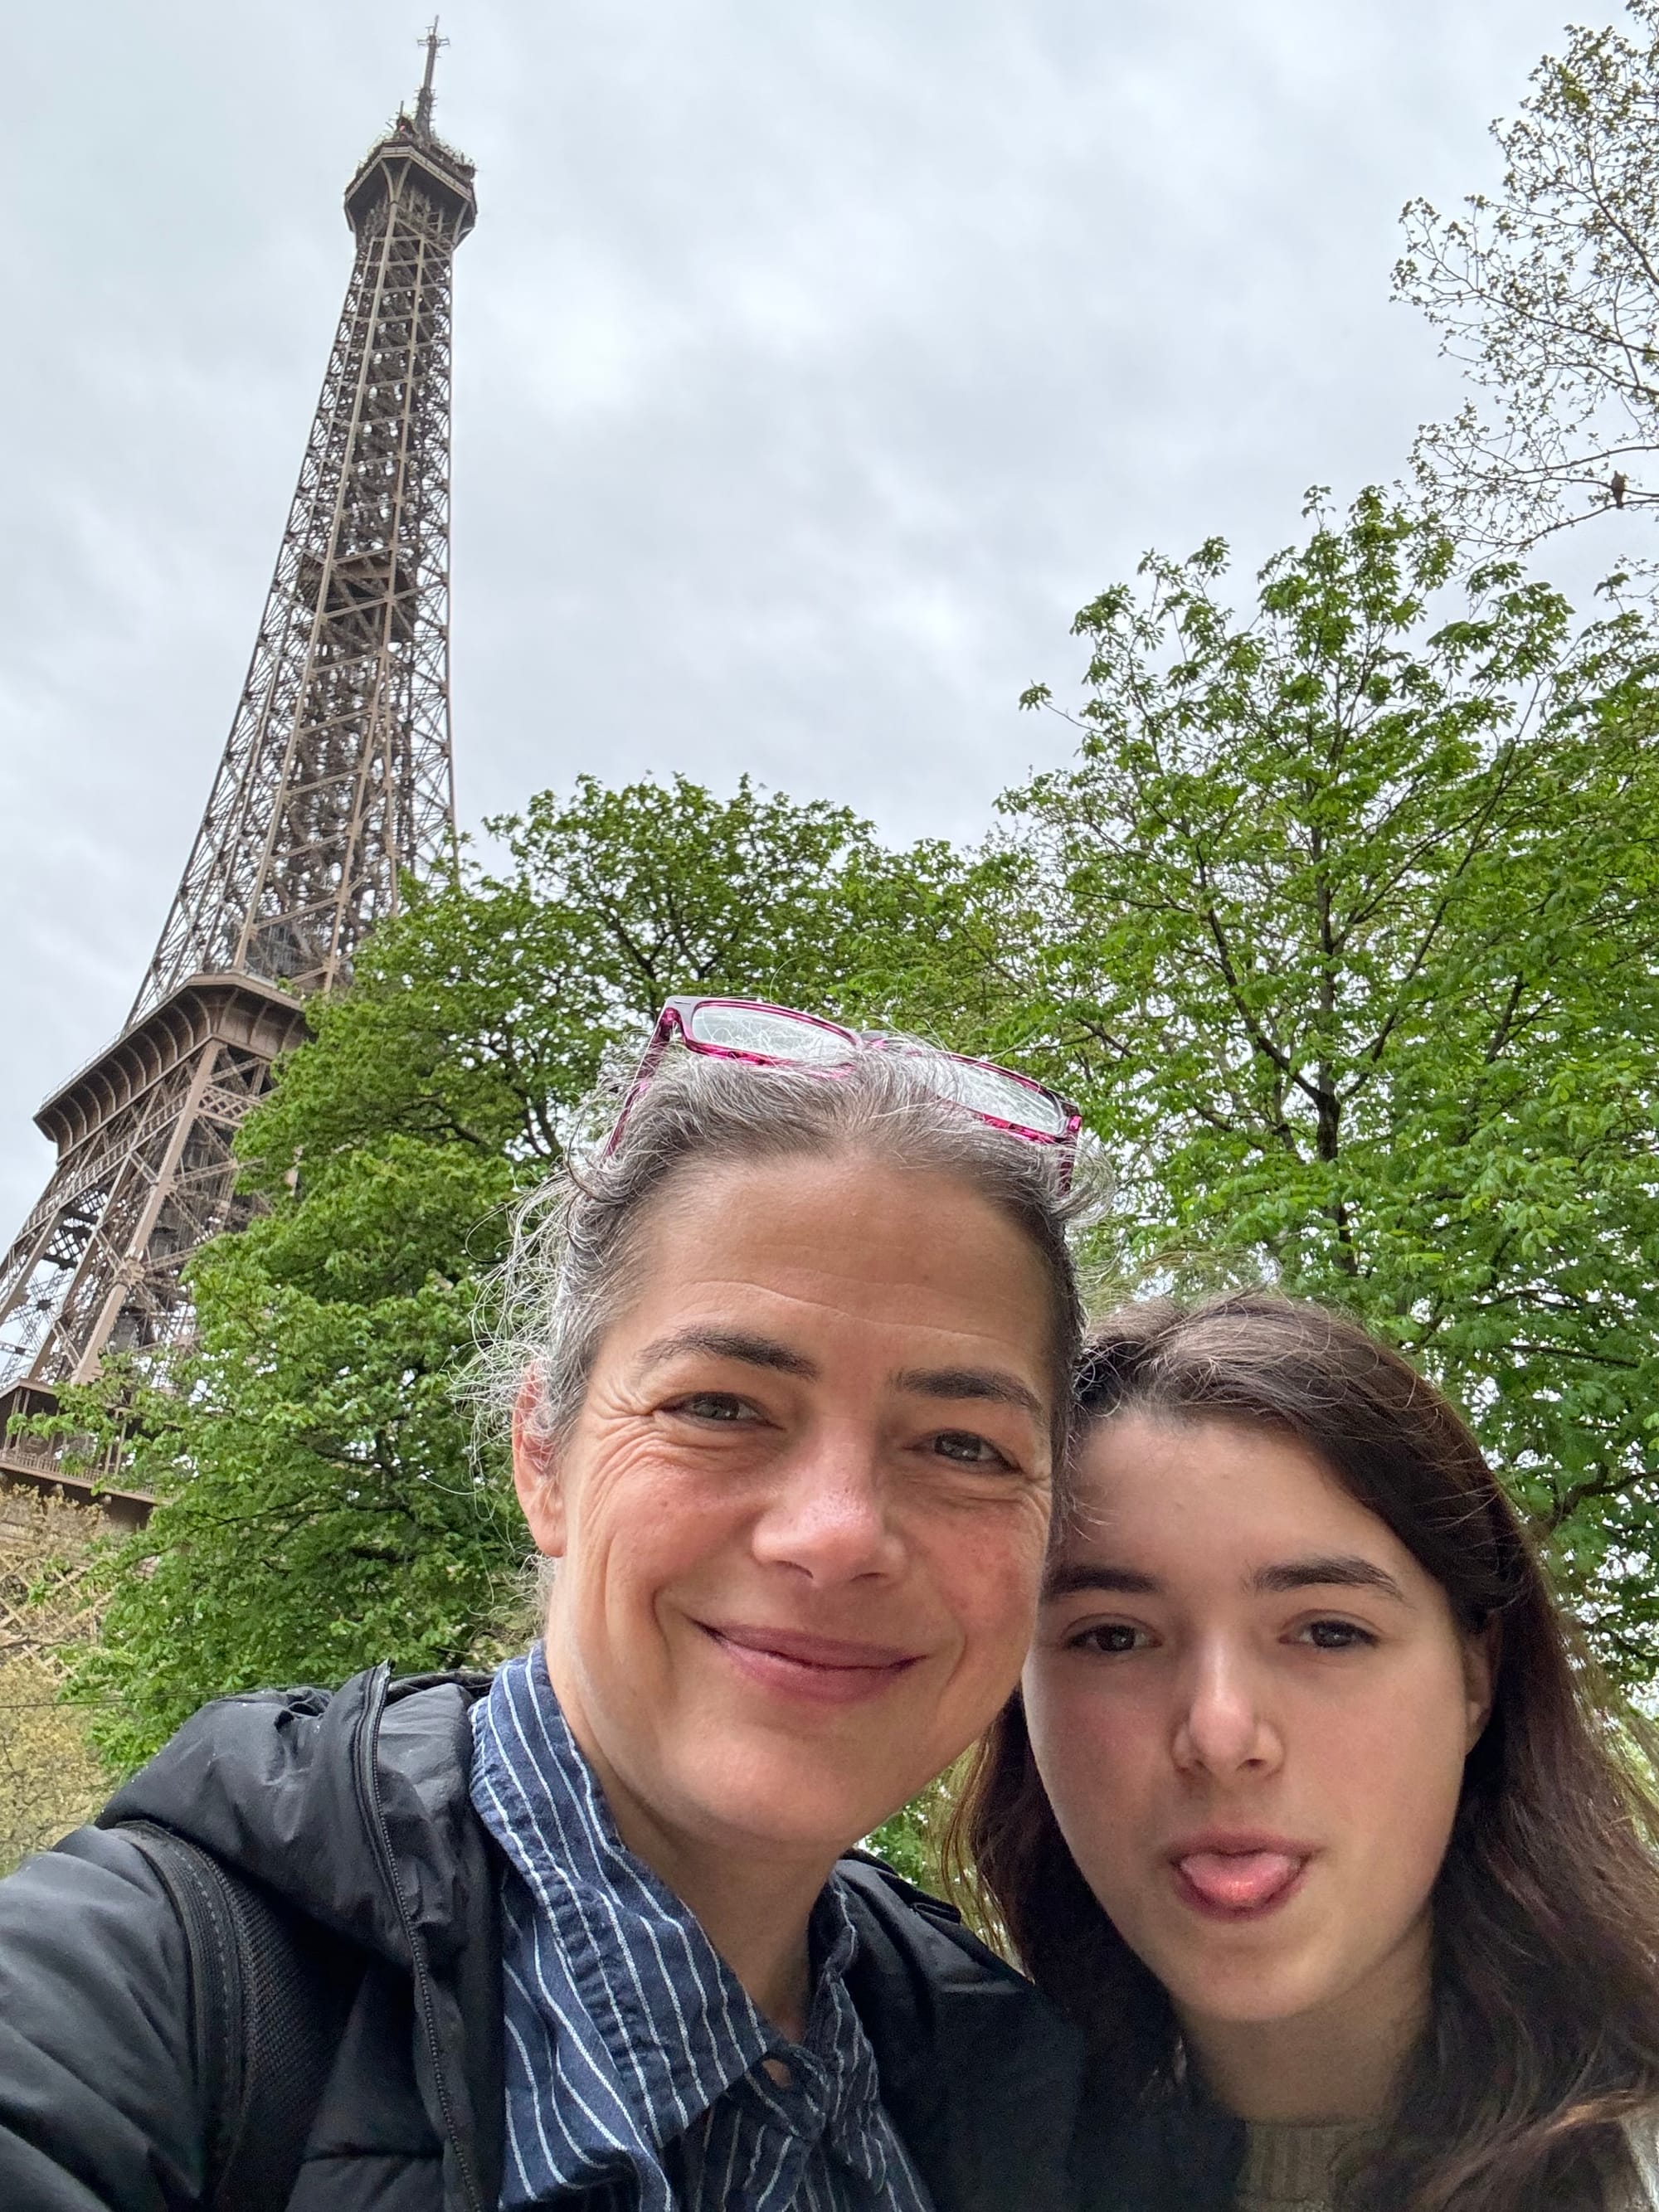 Des soins en français and a whirlwind trip to Paris